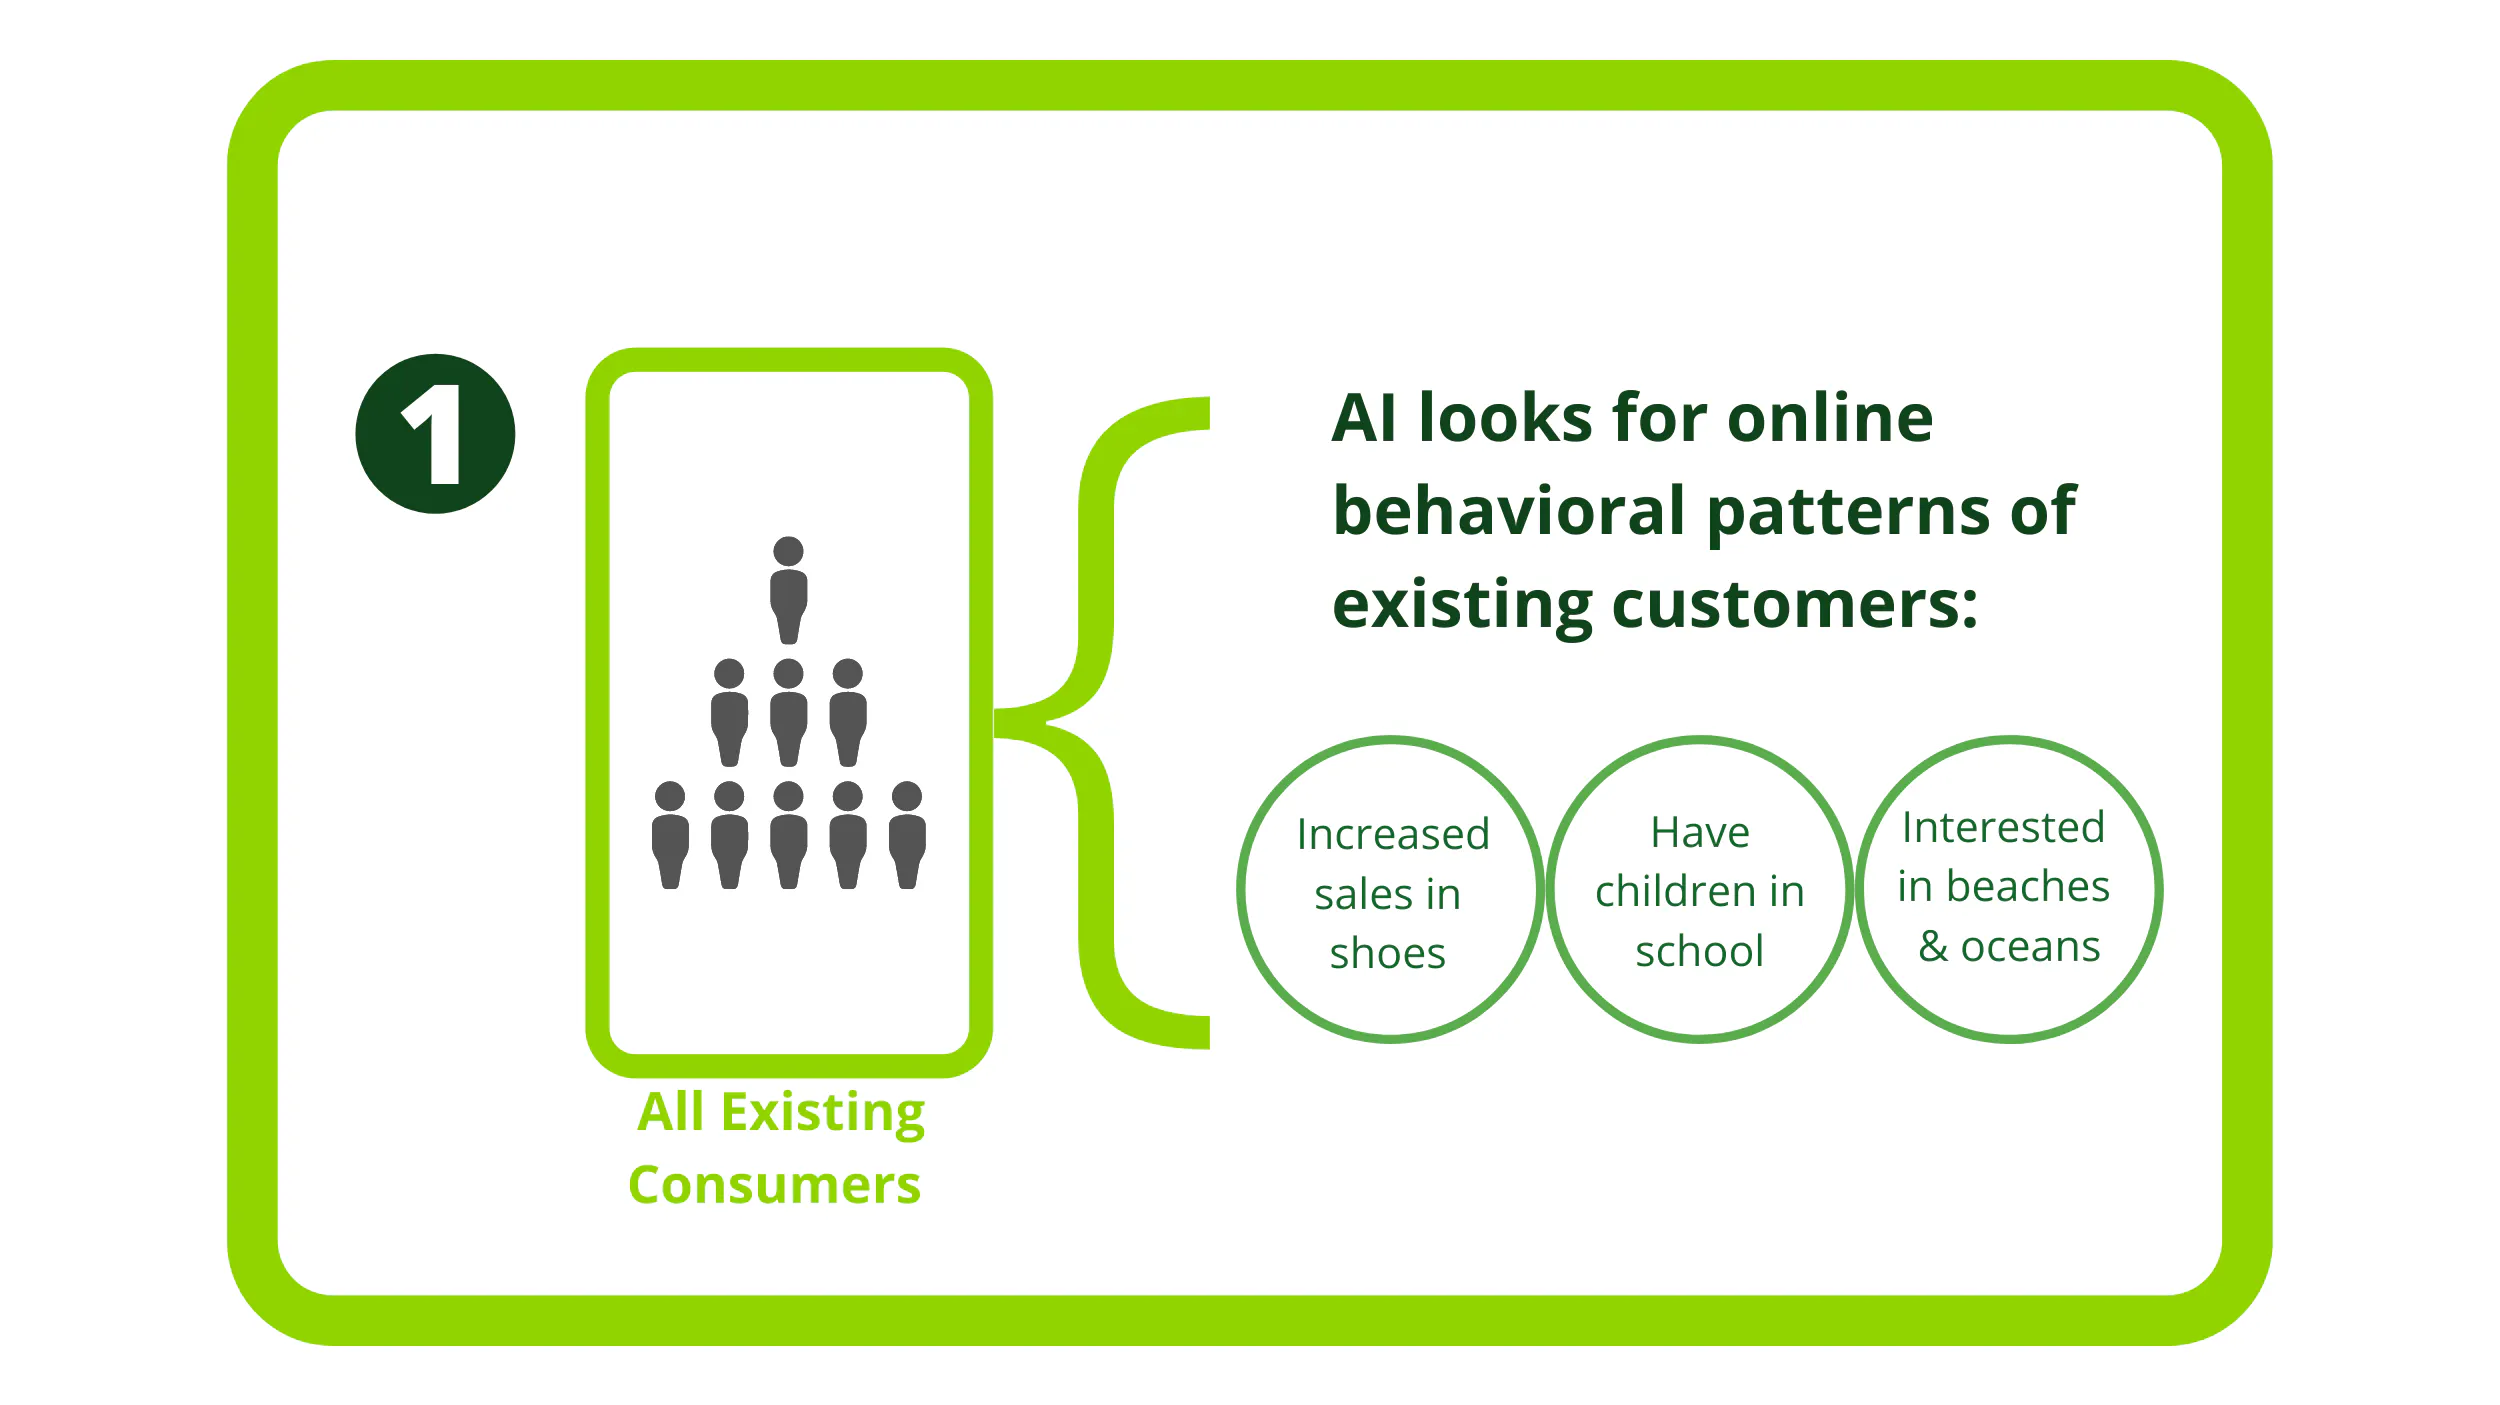 KI sucht nach Online-Verhaltensmustern aller bestehenden Kunden